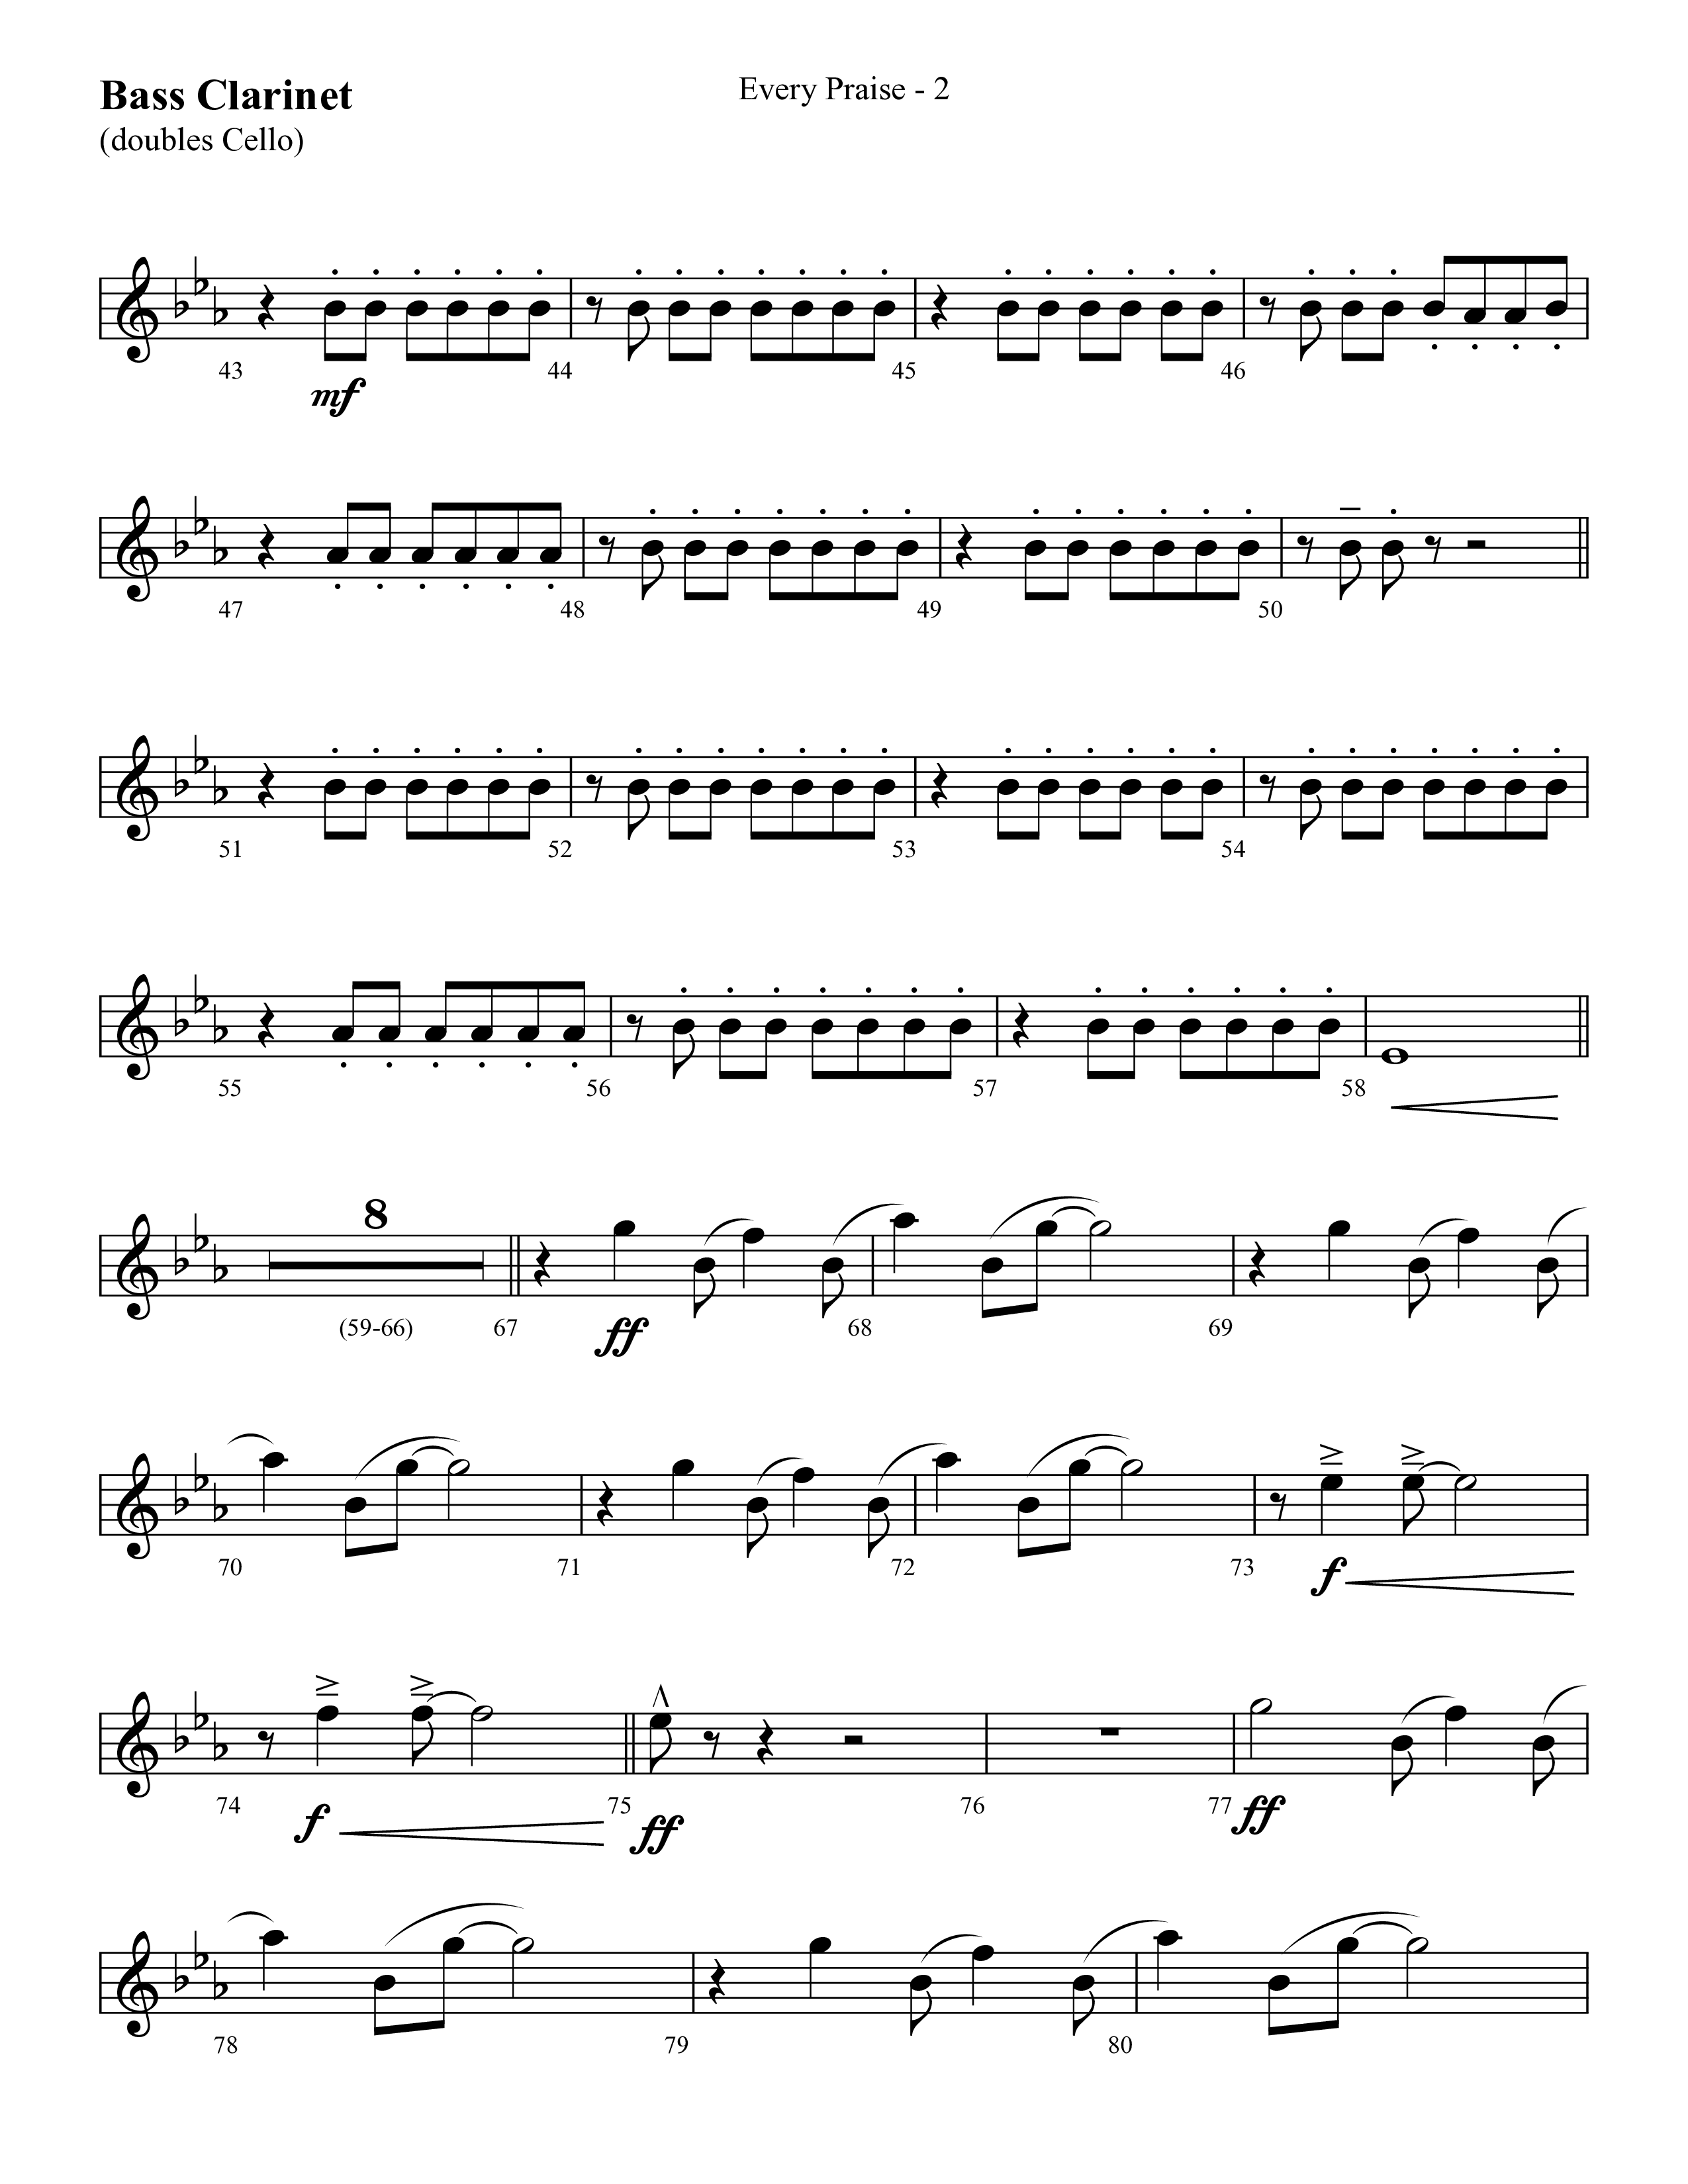 Every Praise (Choral Anthem SATB) Bass Clarinet (Lifeway Choral / Arr. Cliff Duren)